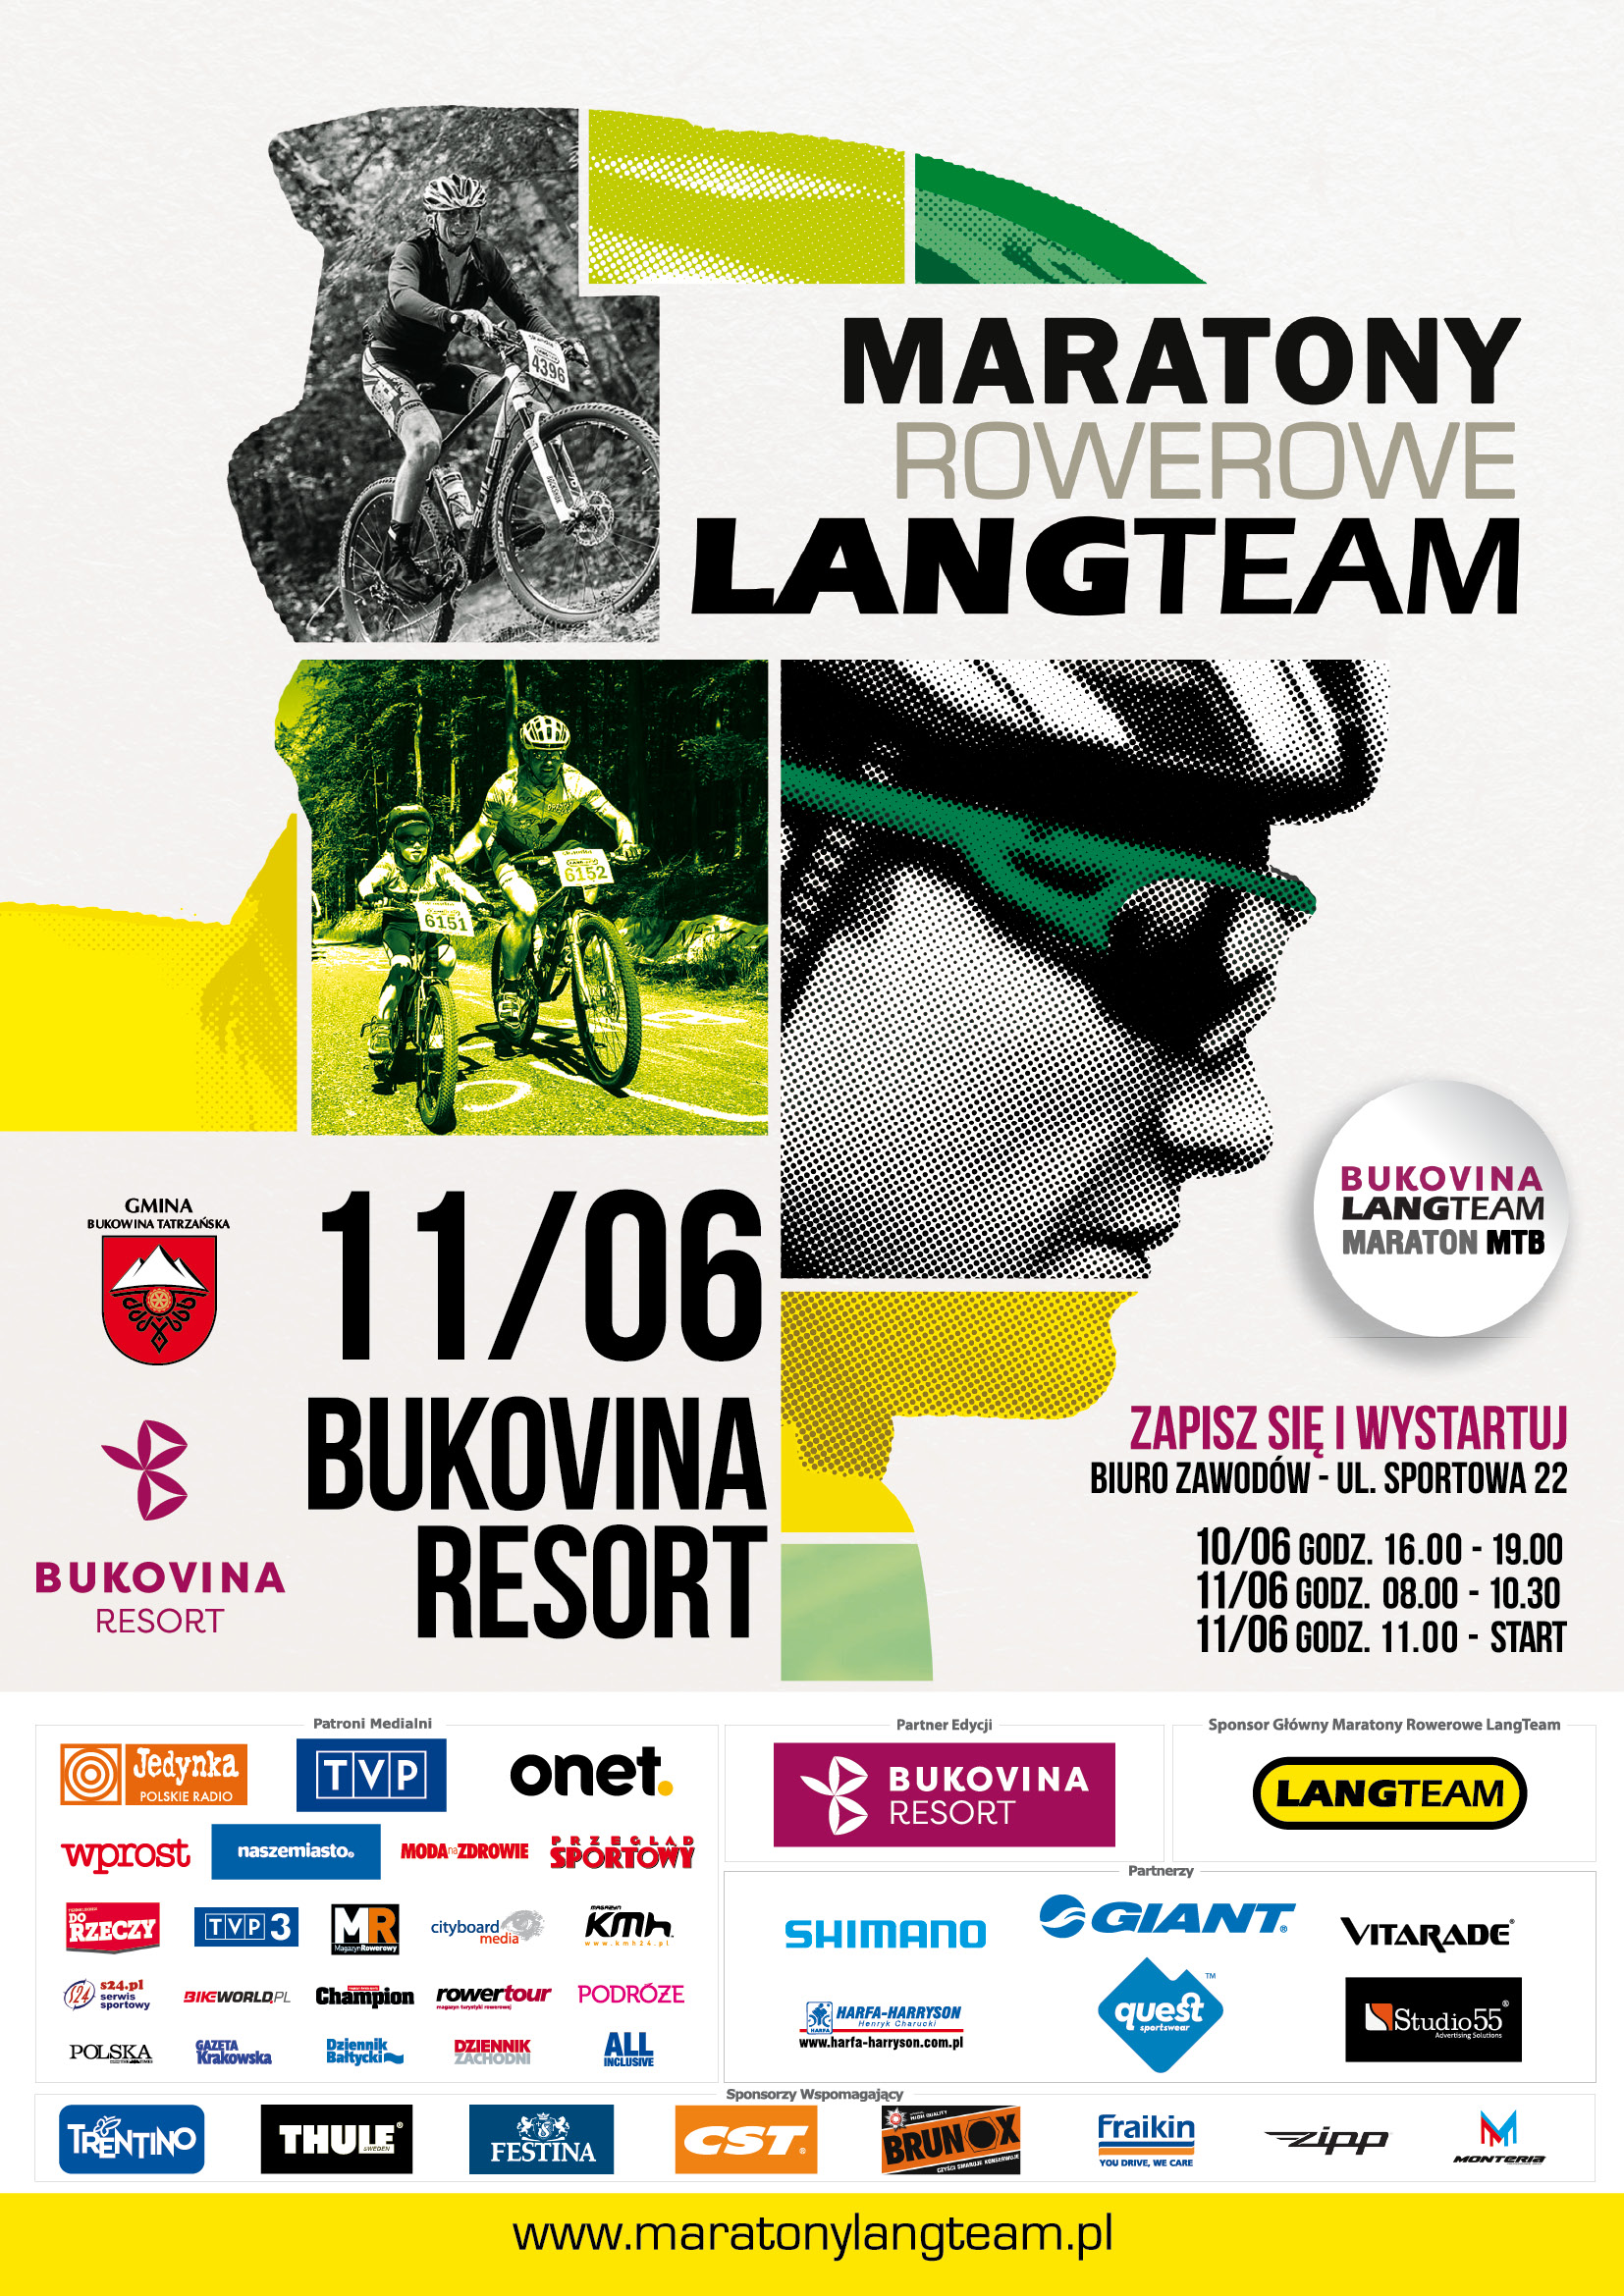 BUKOVINA Lang Team Maraton MTB_afisz_A2